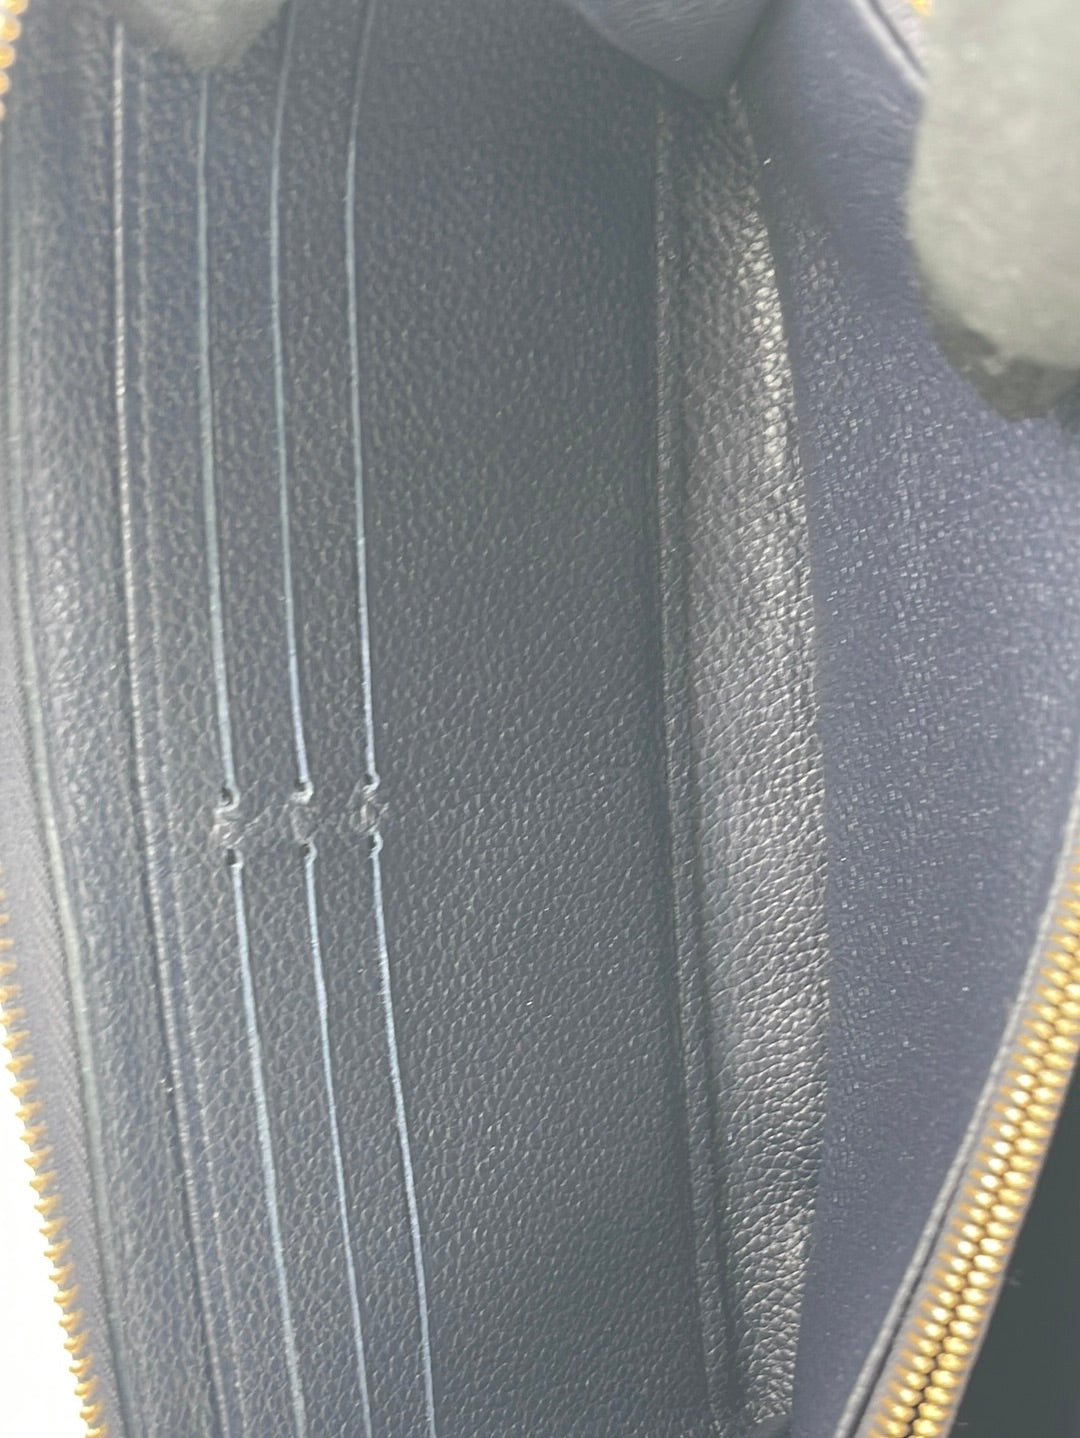 Louis Vuitton Black And Beige Zippy Wallet – EVEYSPRELOVED